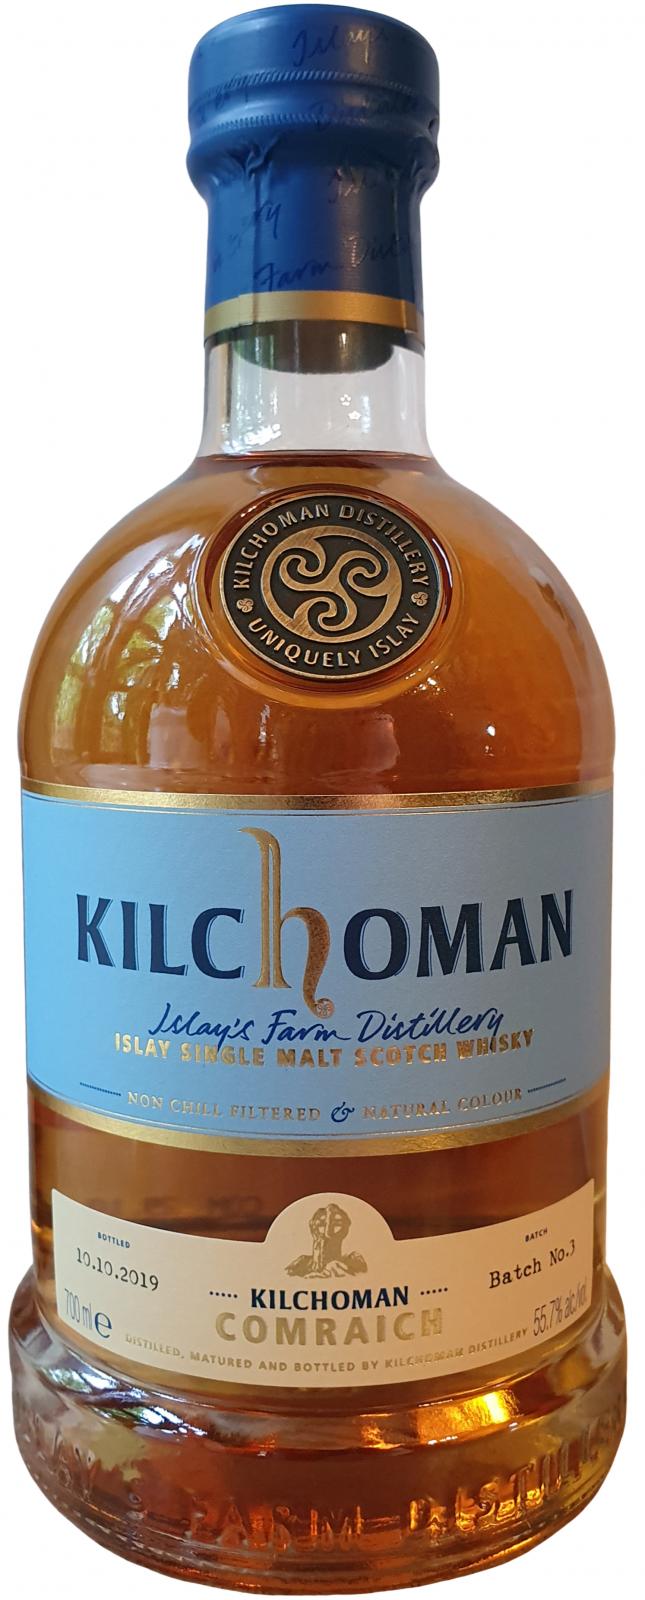 Kilchoman Comraich Batch #3 Sherry Bourbon 275/2010 55.7% 700ml